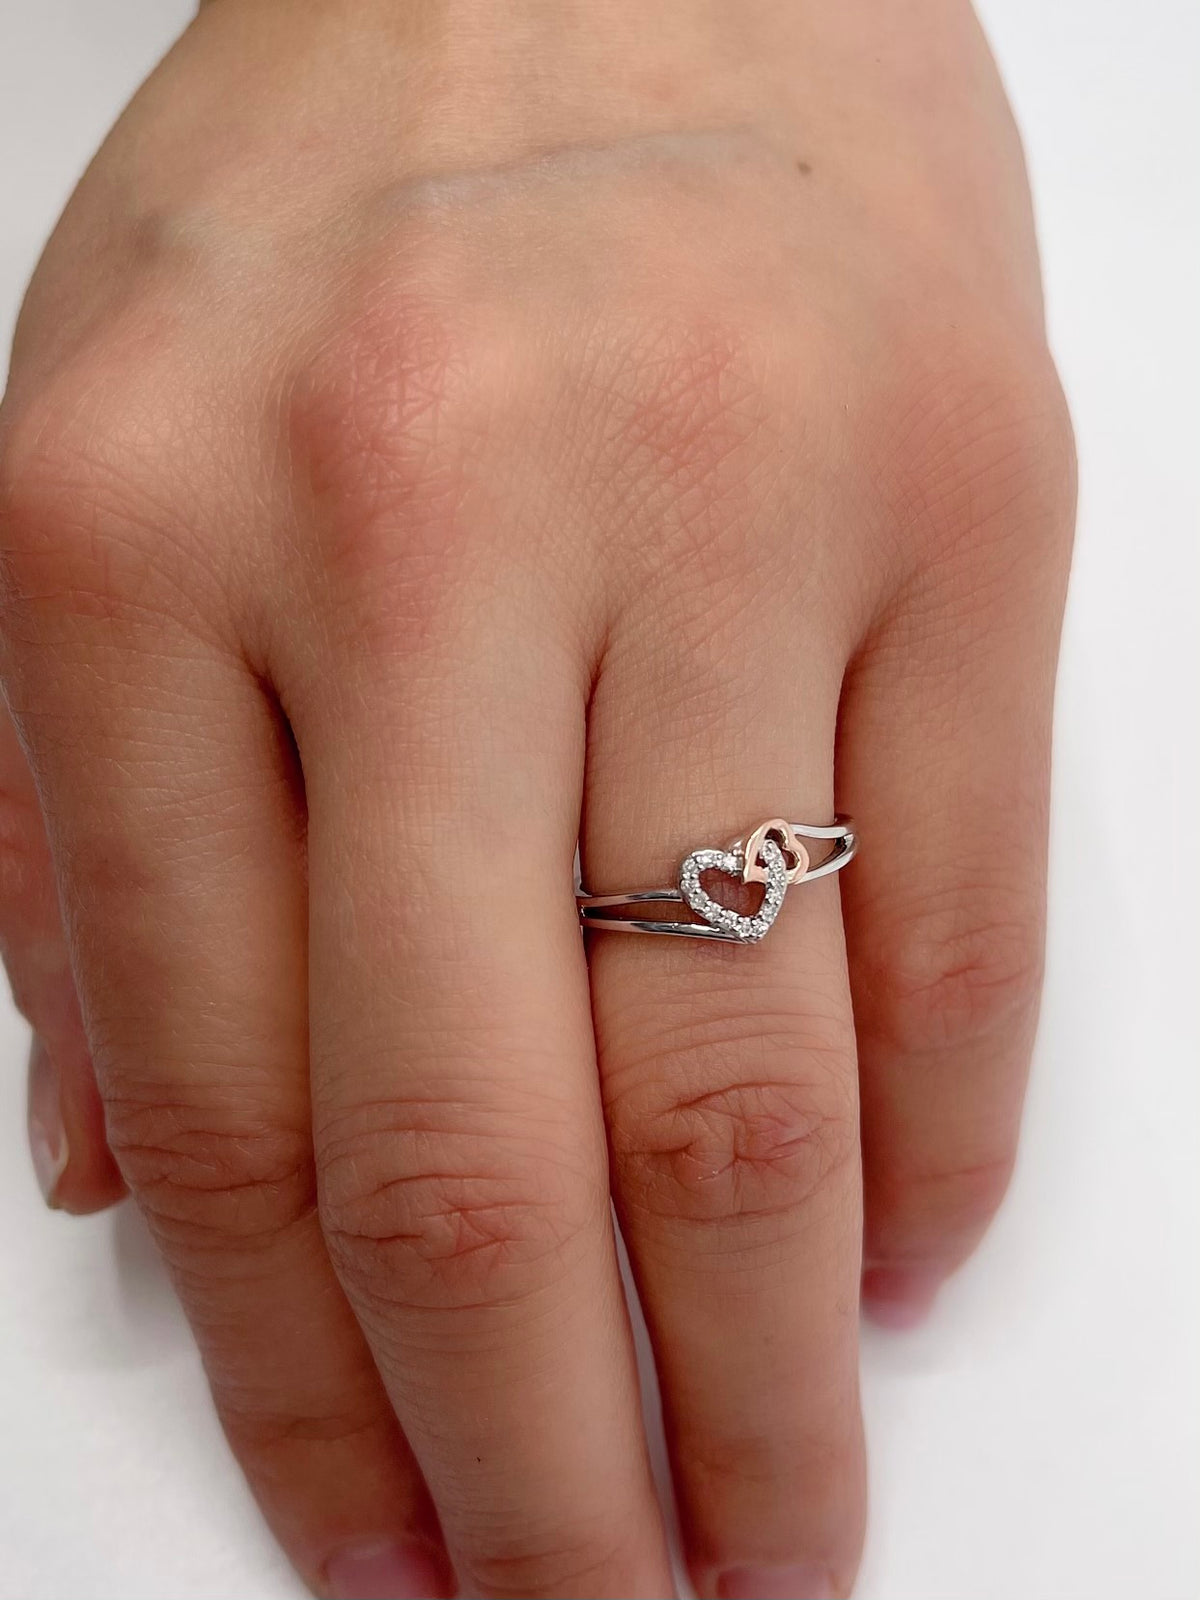 10K White Gold Heart Shape 0.054cttw Diamond Ring, size 6.5